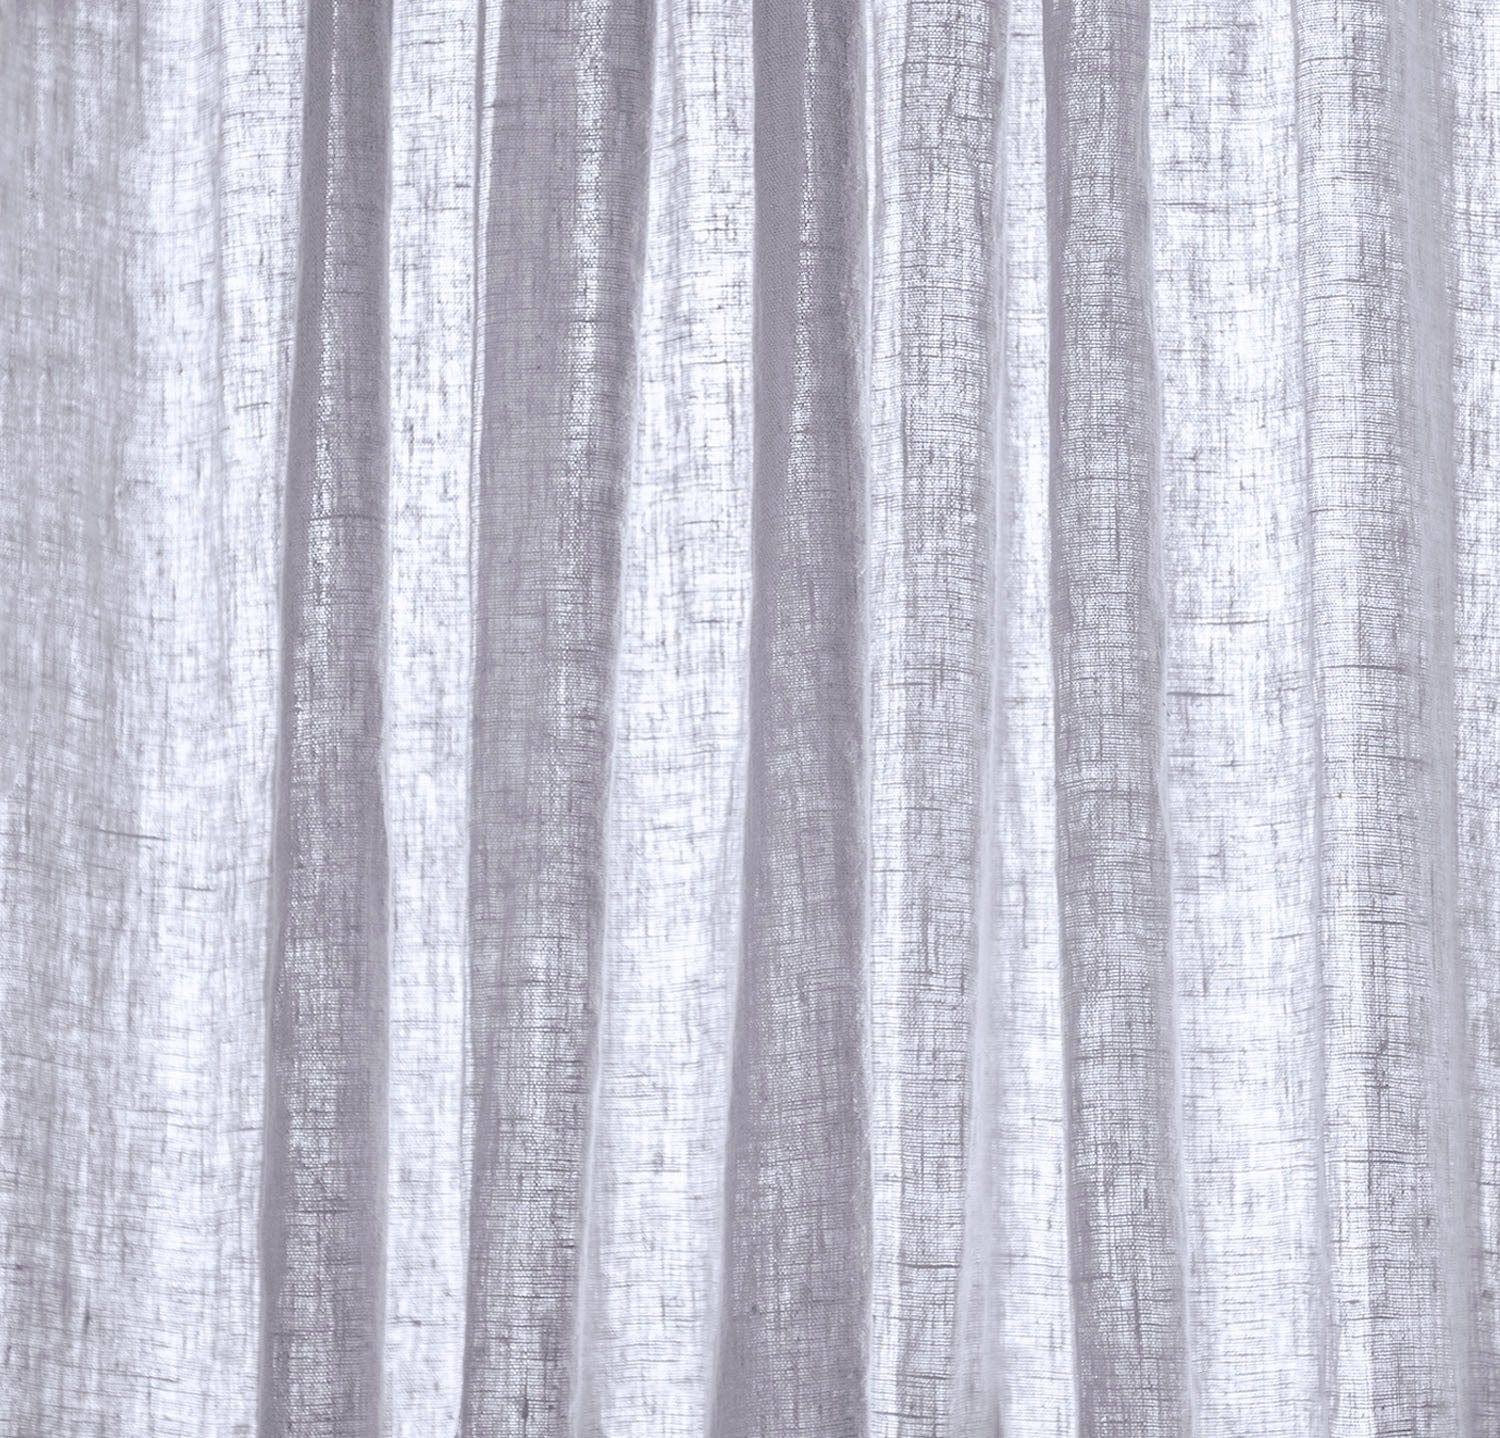 Best Linen Curtains